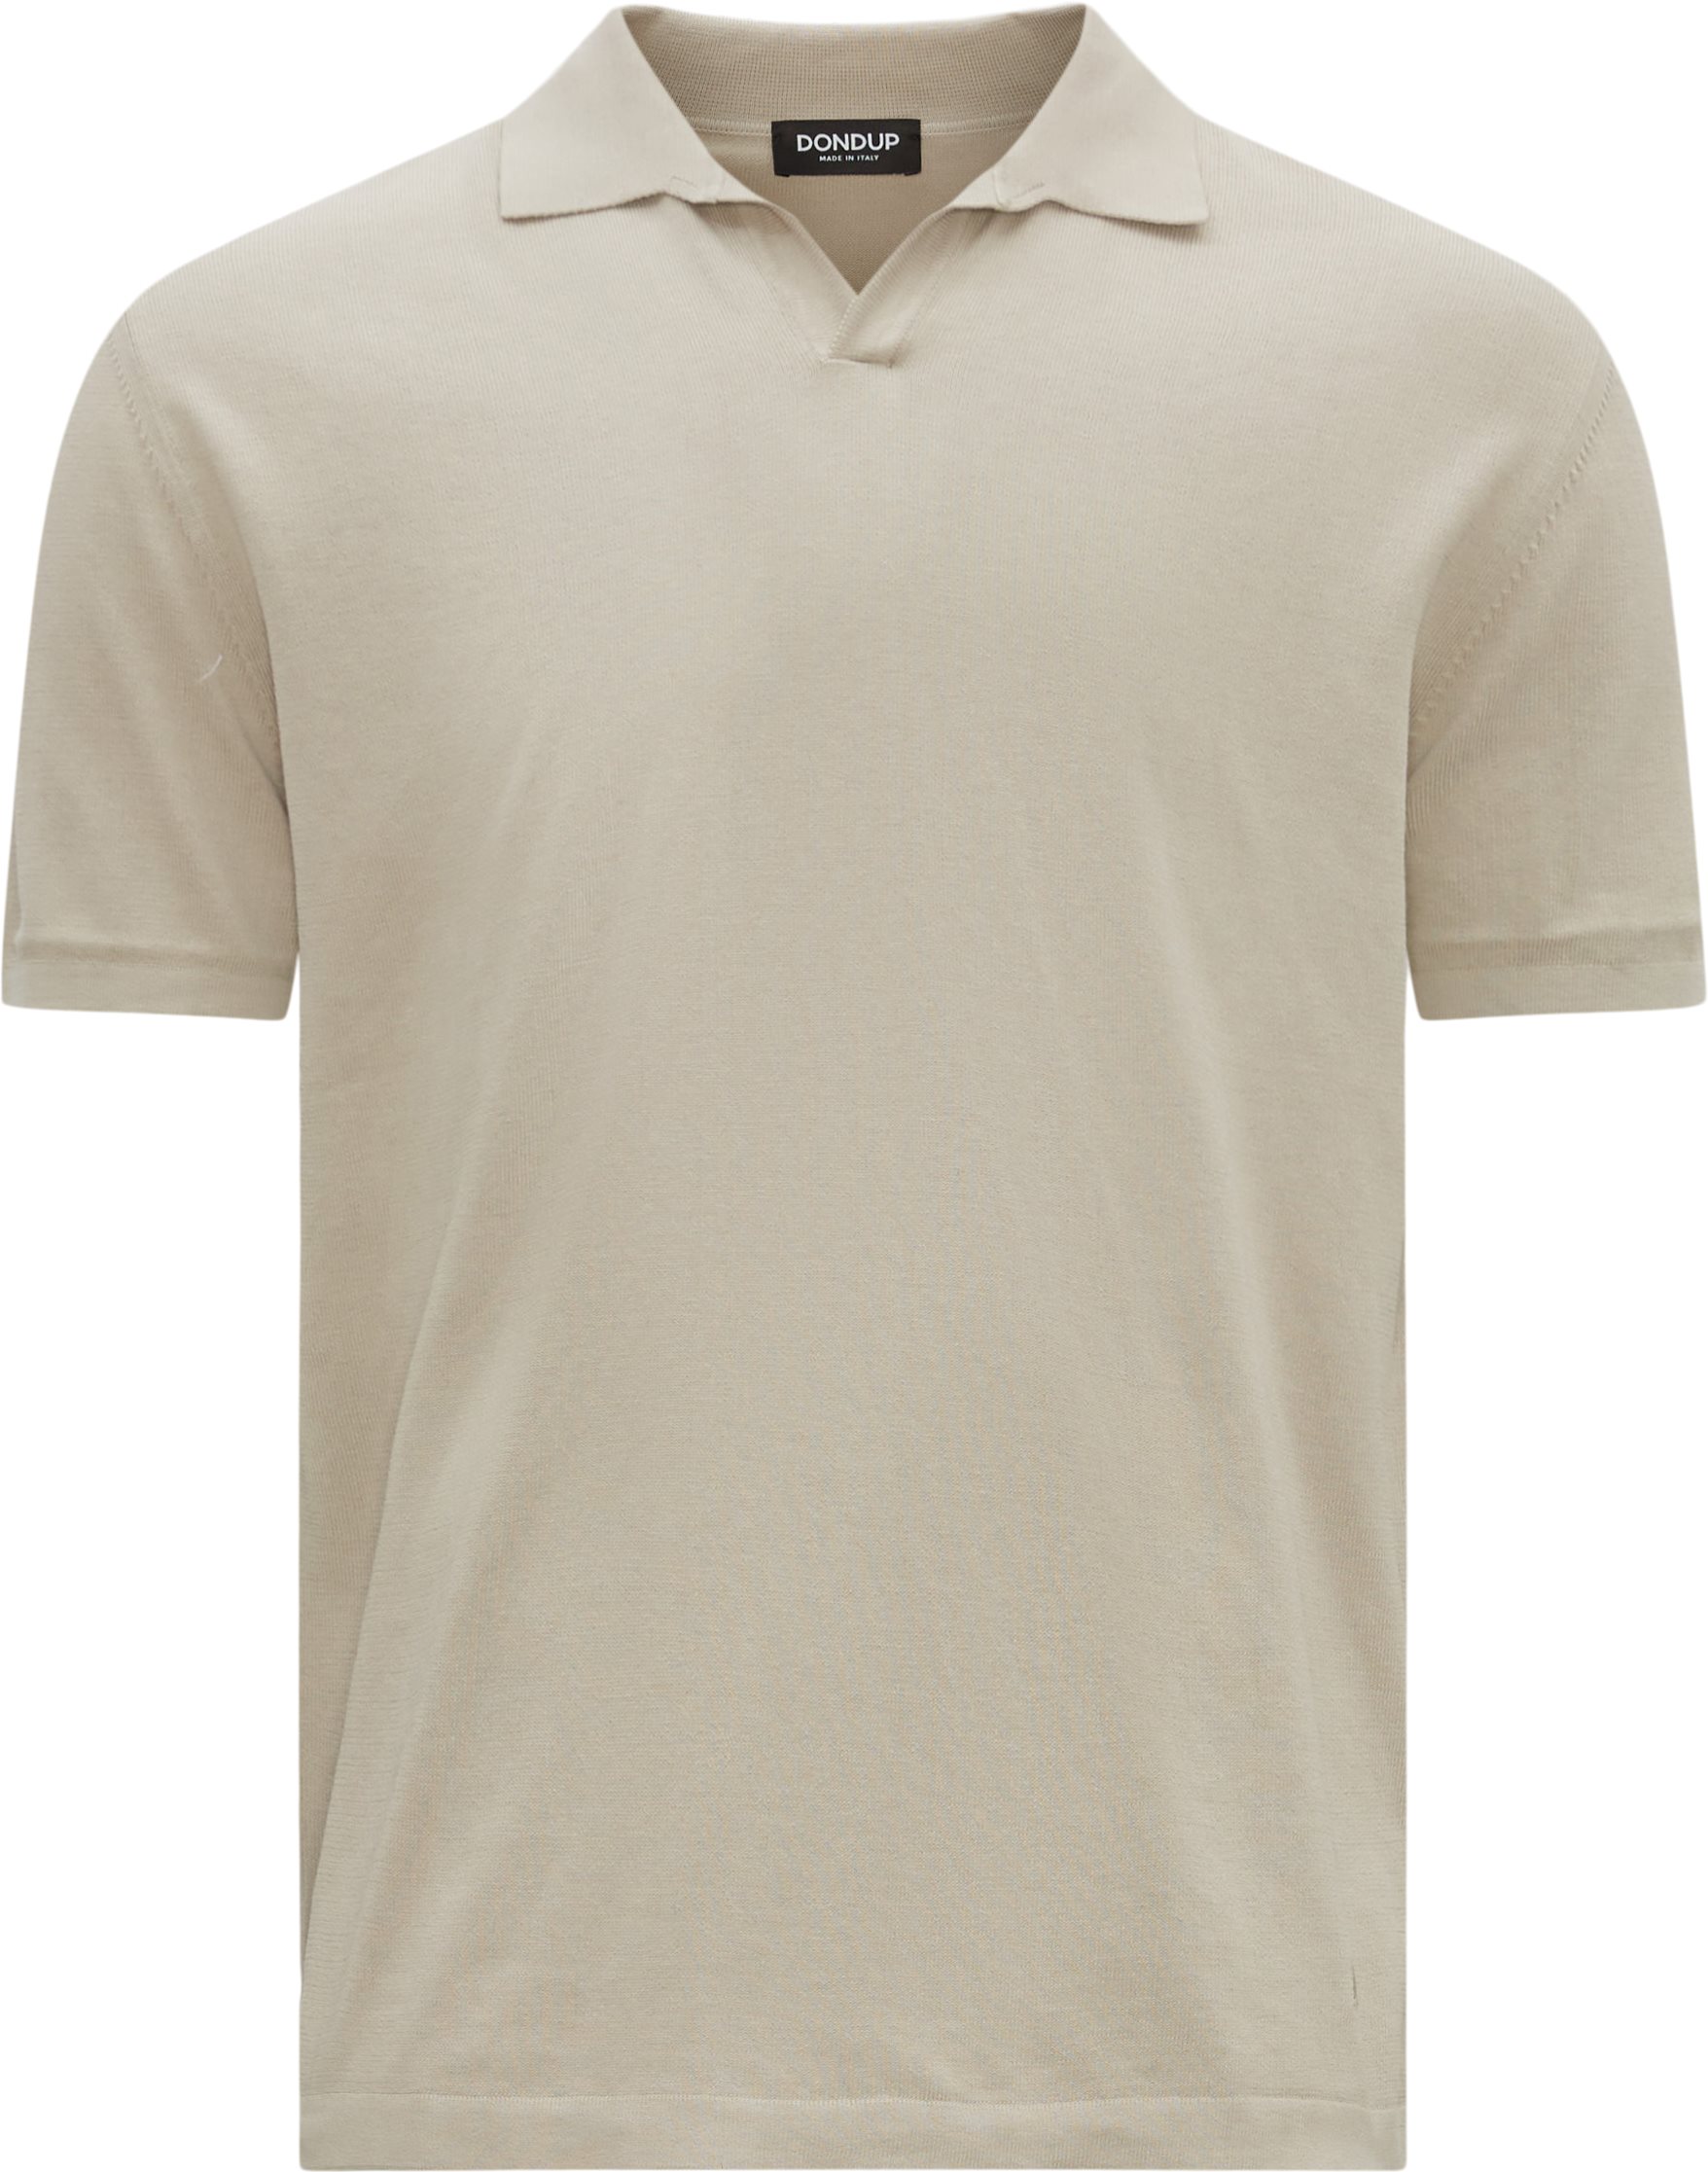 Dondup T-shirts UT122 M699 PTR Grey